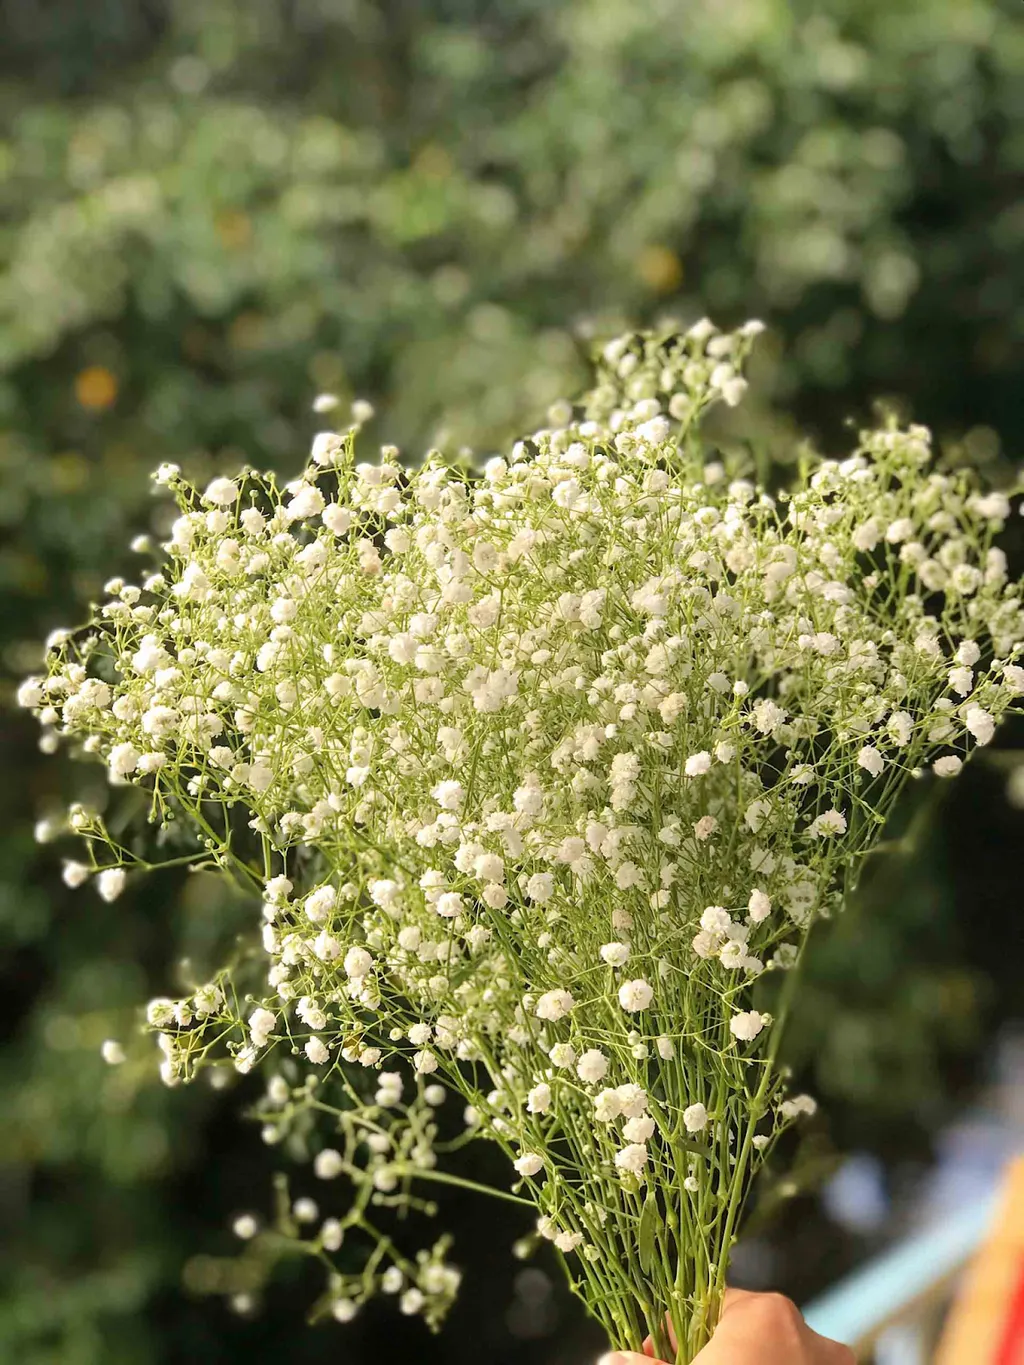 Hoa Baby được biết đến với vẻ đẹp nhẹ nhàng và tinh tế của các bông hoa nhỏ trắng, thích hợp để sử dụng trong các dịp lễ tết hoặc để trang trí không gian sống